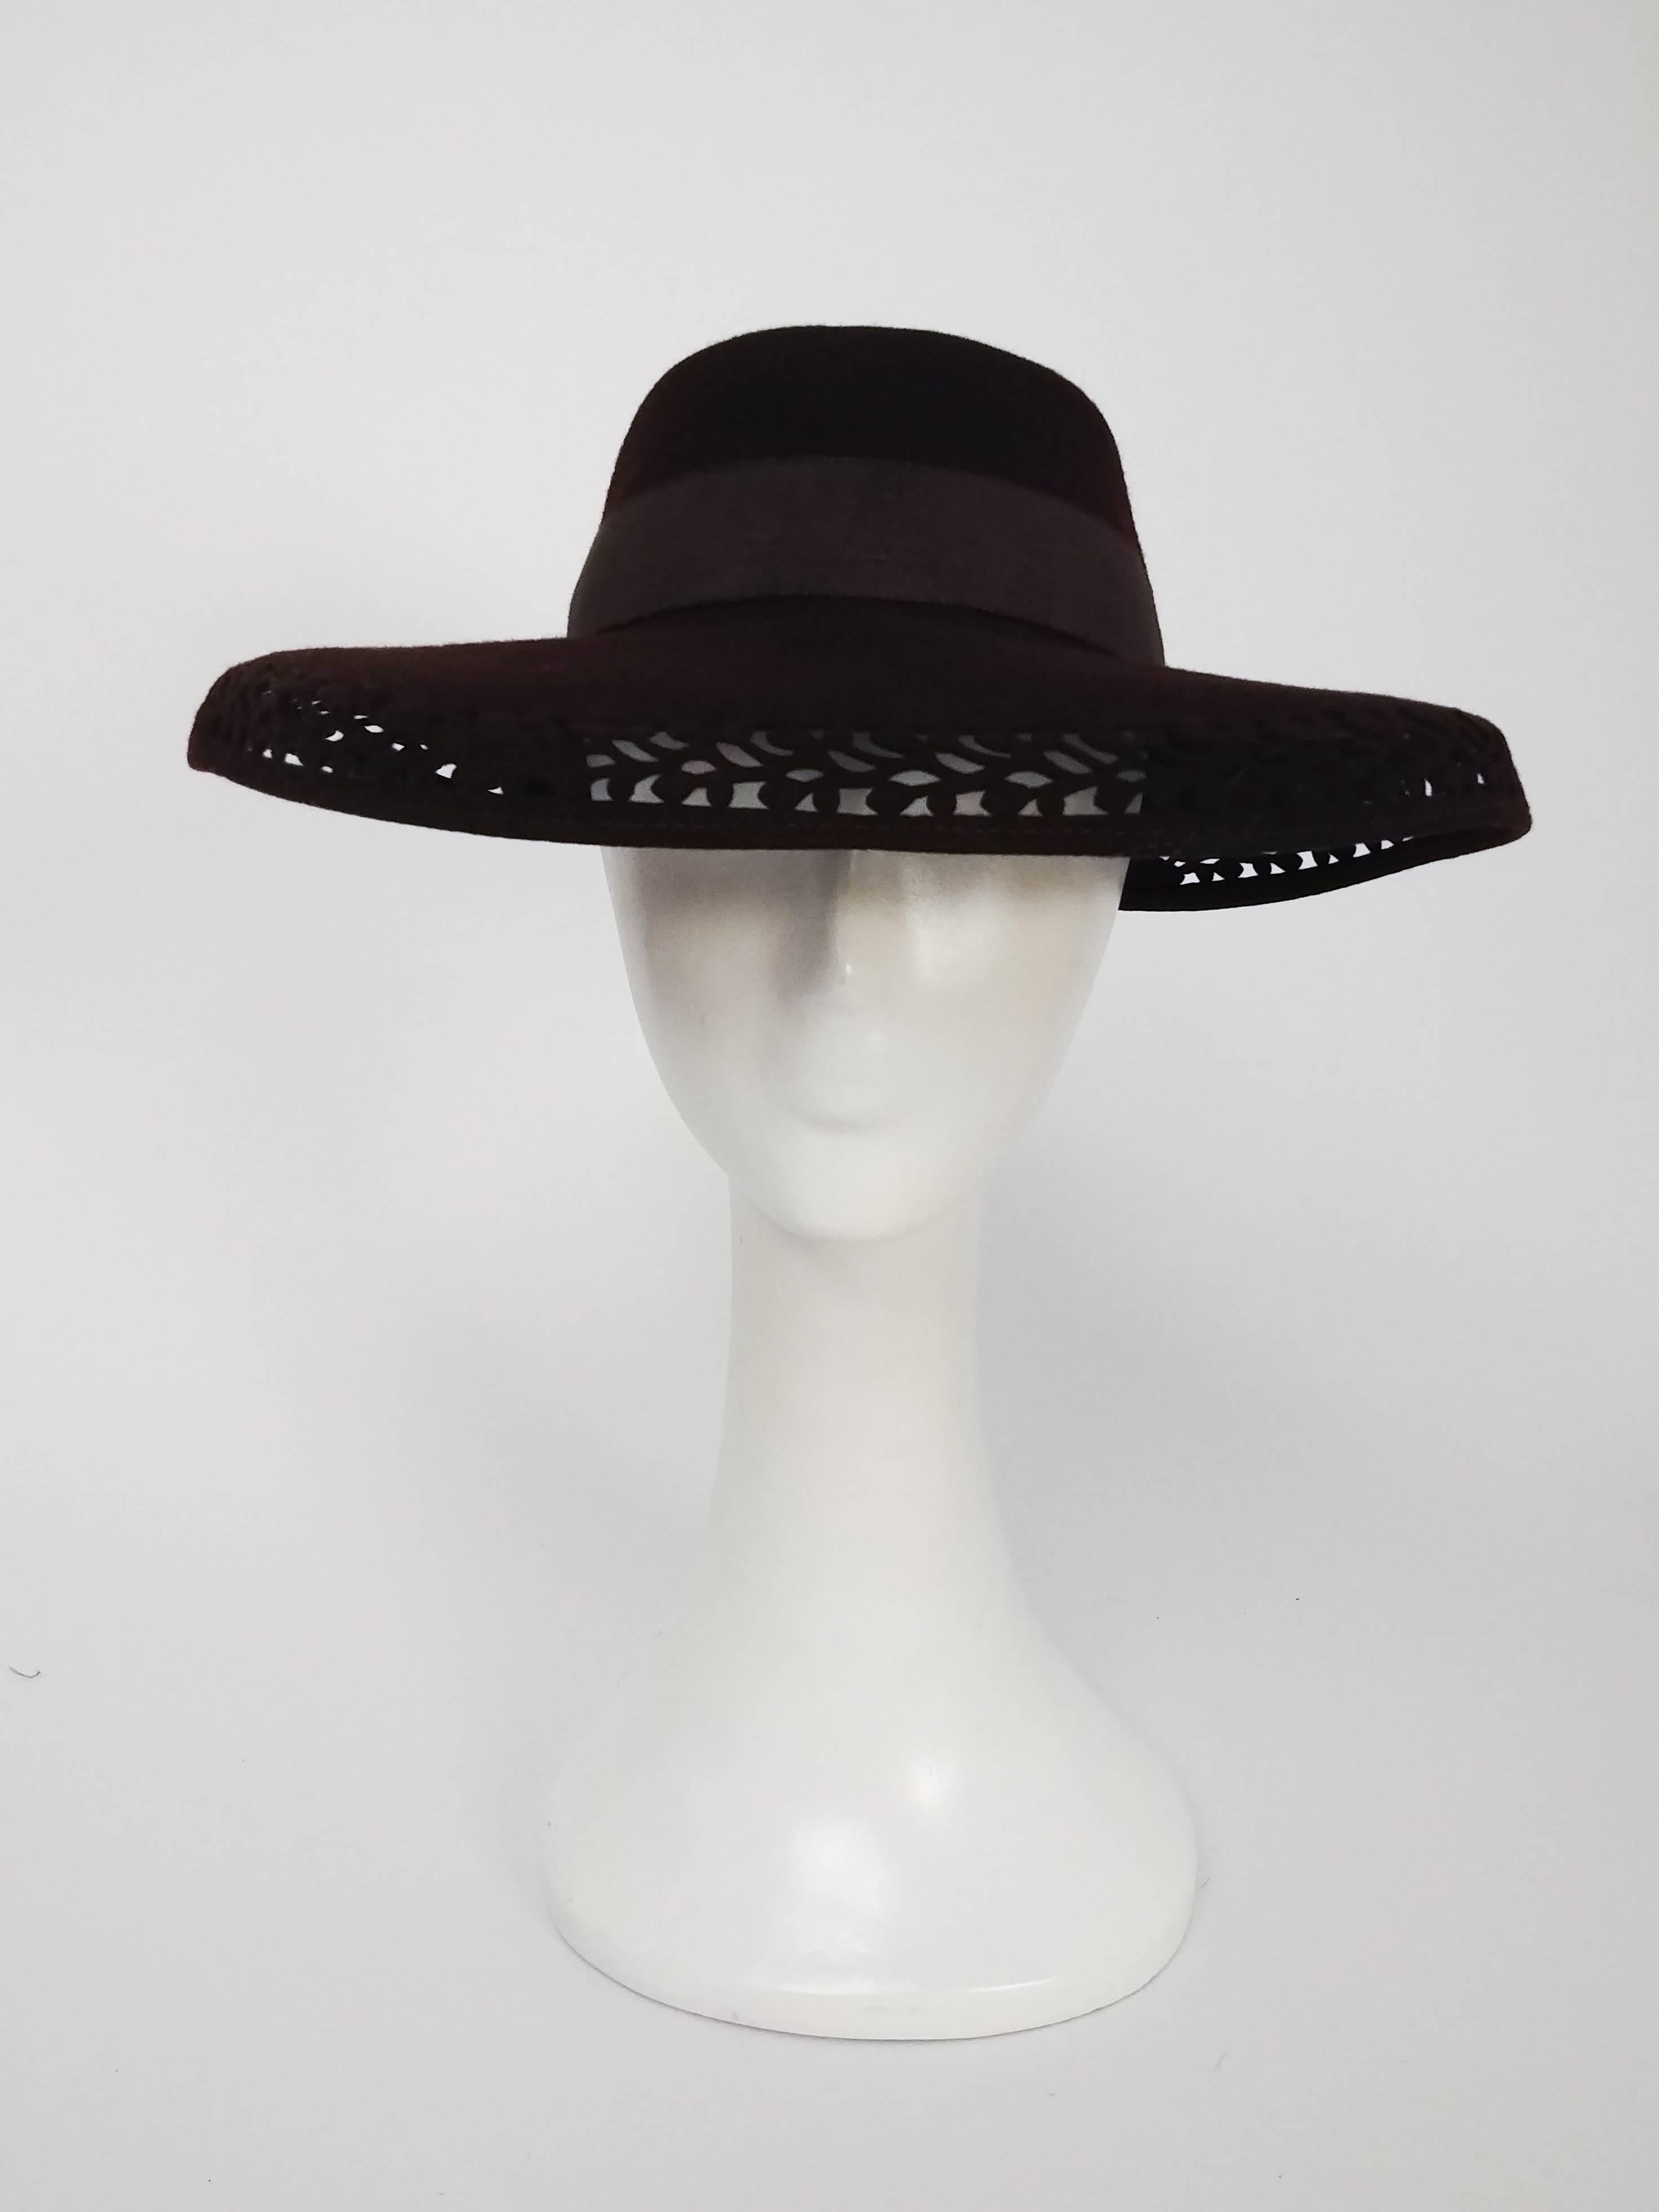 brauner Filzhut mit breiter Krempe aus den 1940er Jahren. Schnittmuster entlang der Hutkrempe, verziert mit einer Schleife am Rücken. 